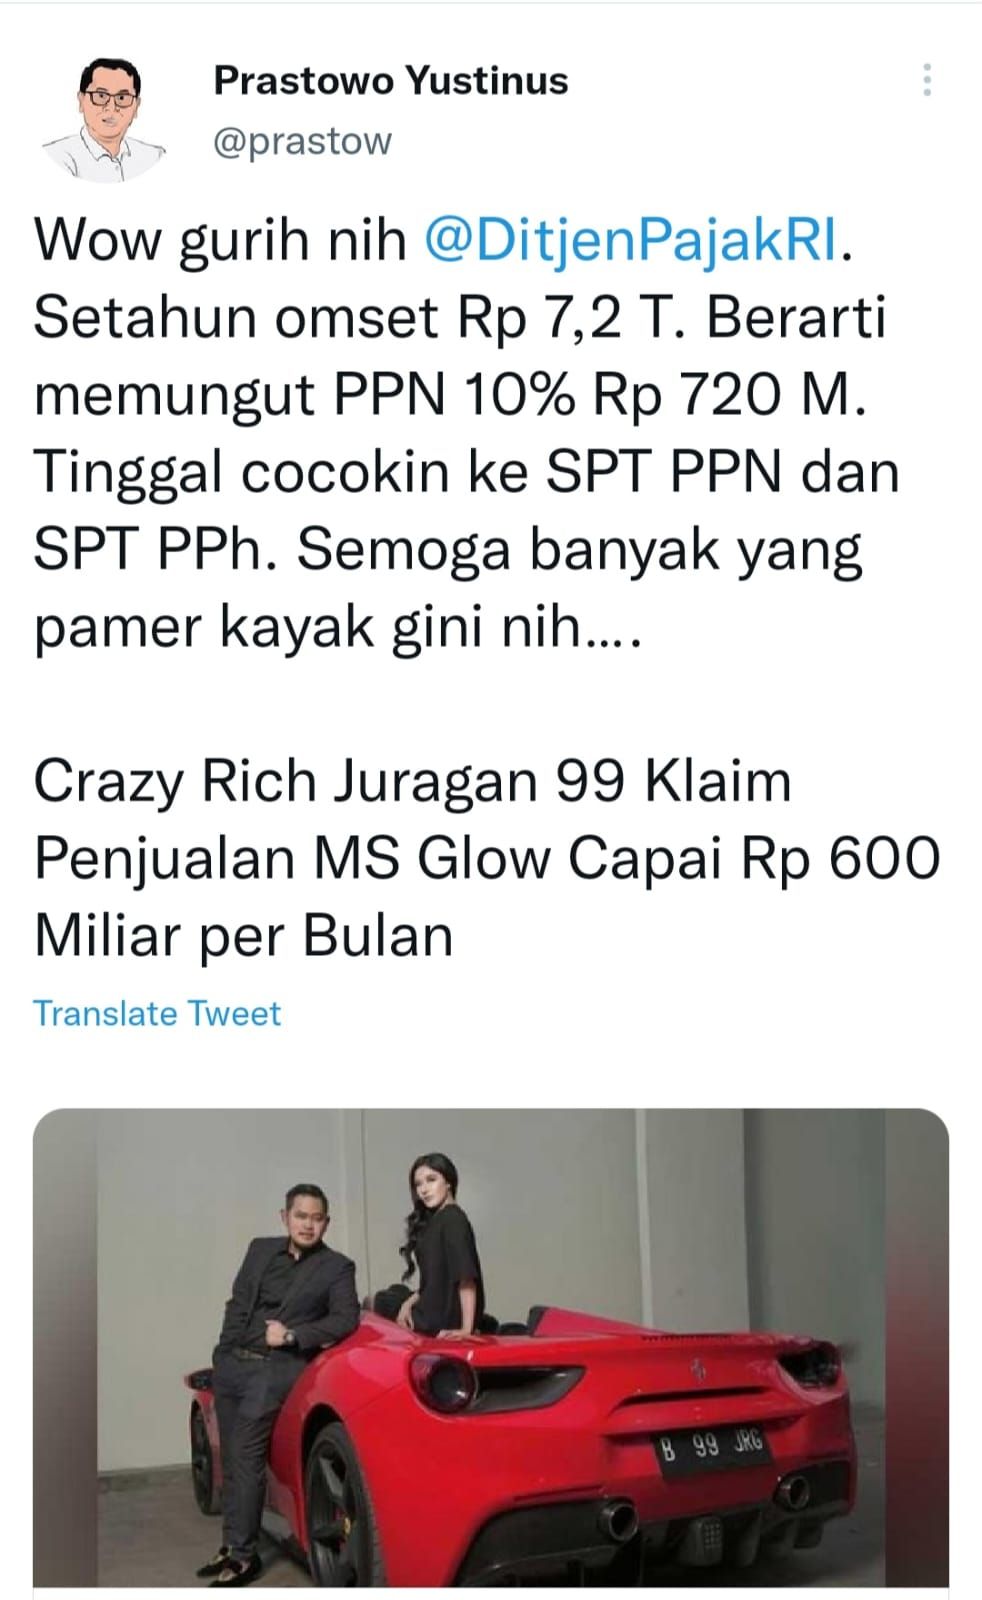 Staf Khusus Menteri Keuangan yakni Yustinus Prastowo langsung ikut mengomentari klaim Juragan 99 tersebut melalui akun Twitter resminya @prastow.